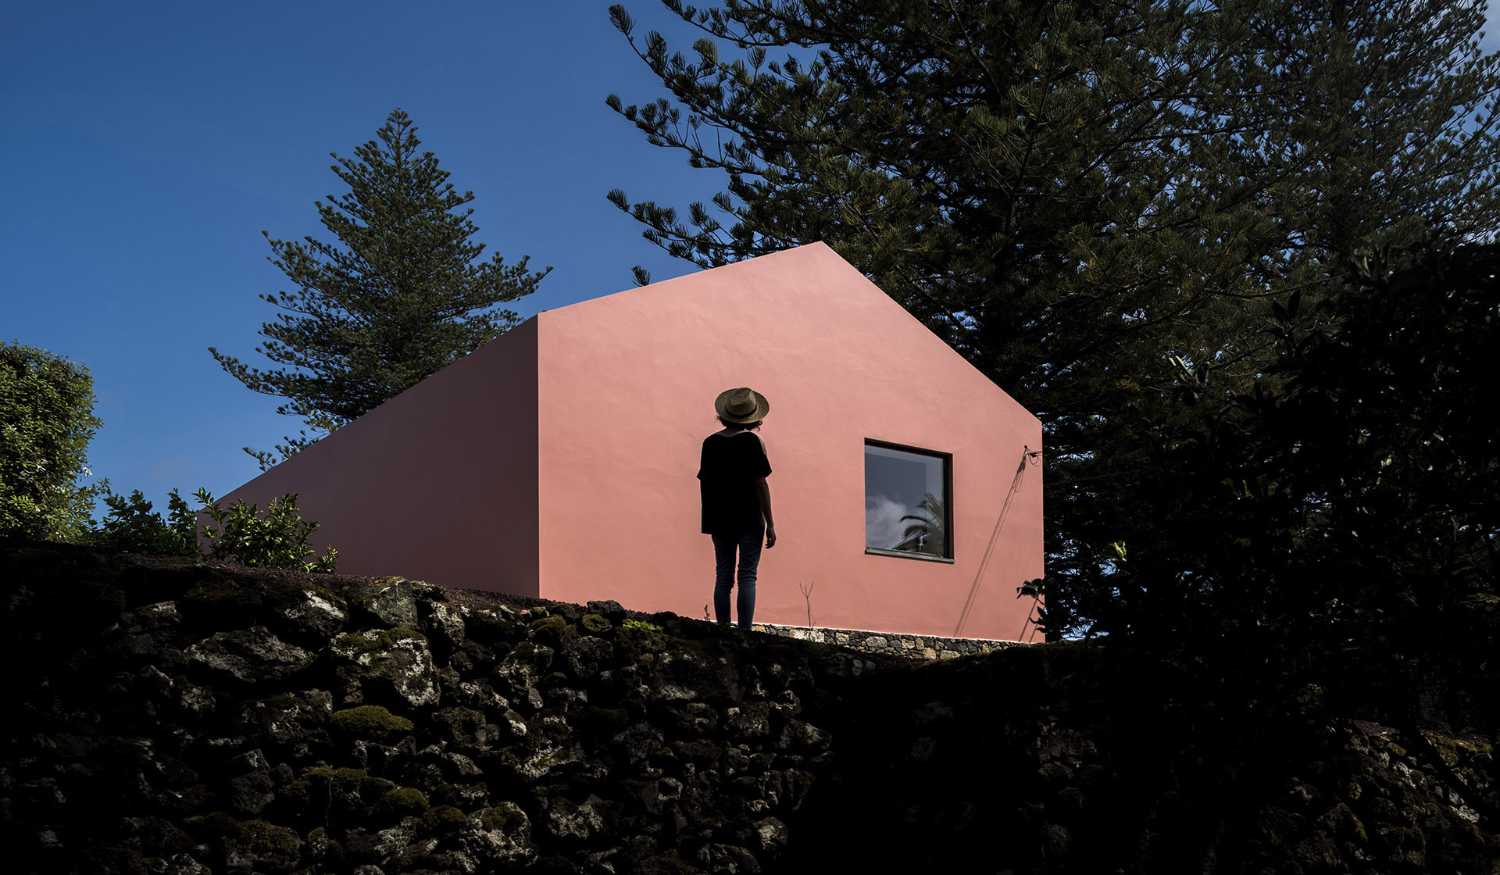 Basamento in pietra e abitazione rosa